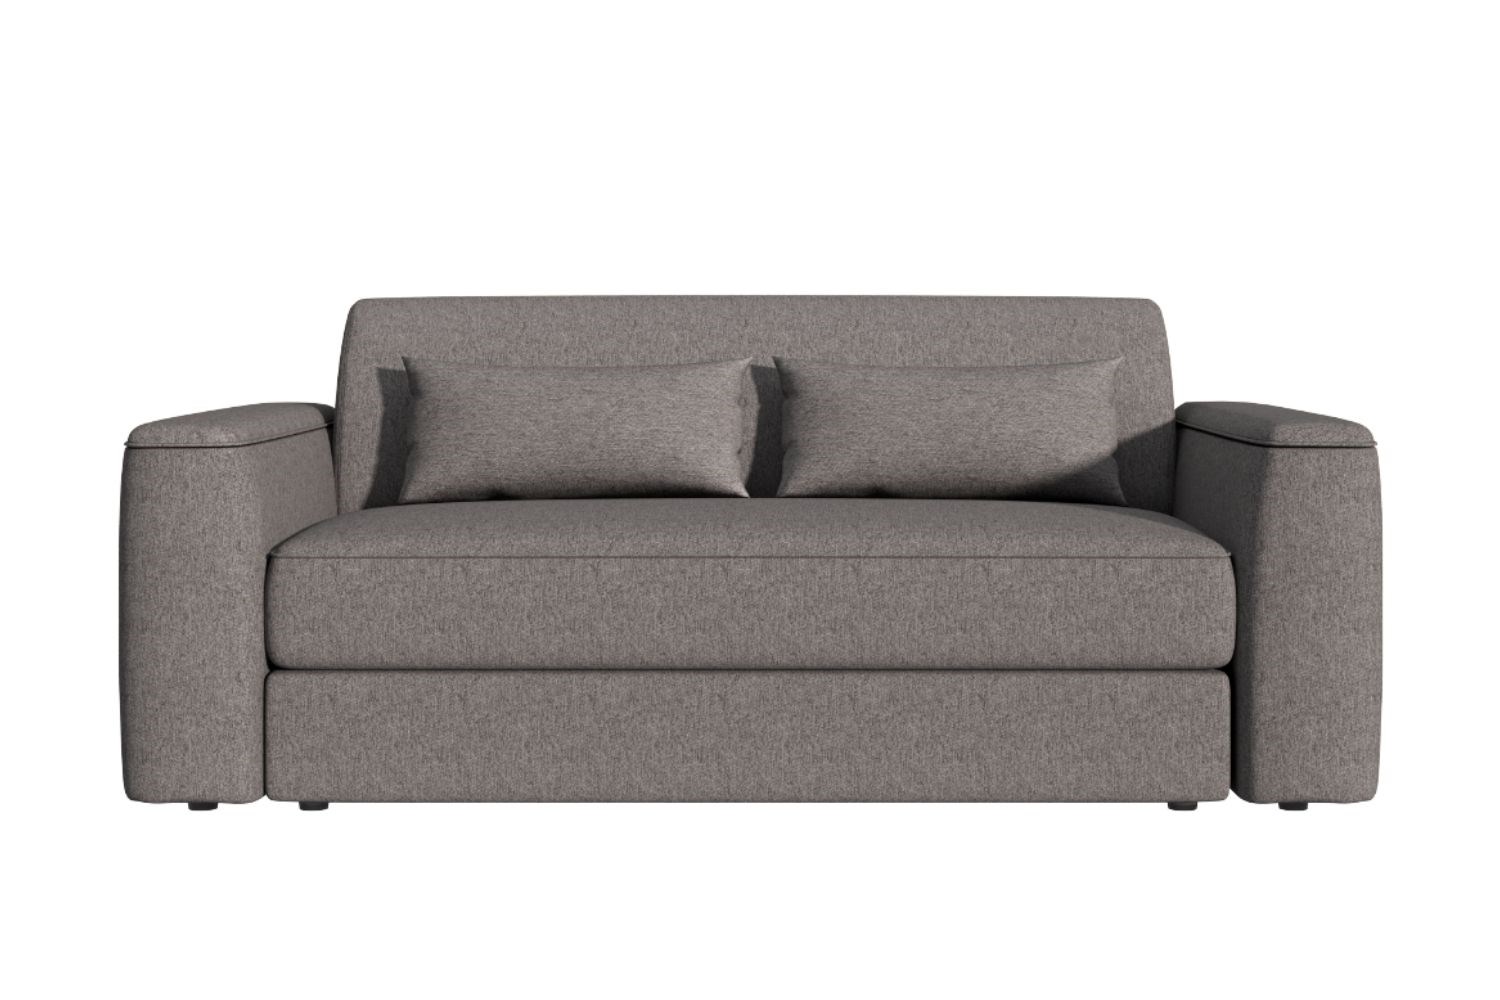 Emma Sleep Sofa ?width=720¢er=0.0,0.0